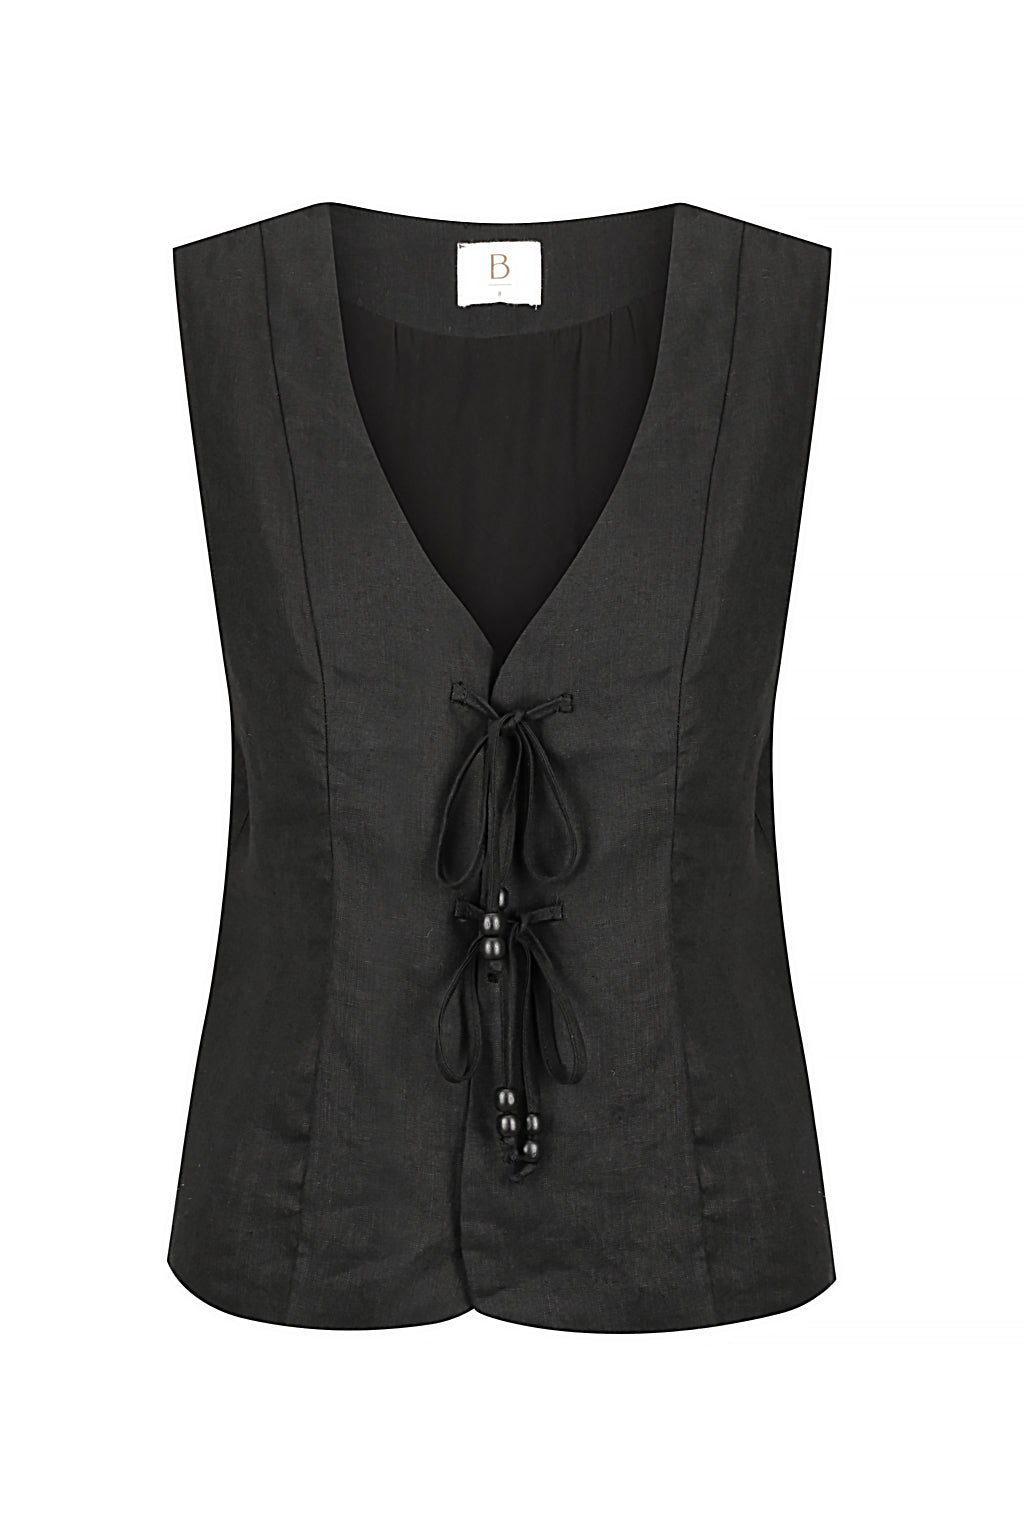 Bisk the Label Claudia Black Linen Tie Vest Co-ord set